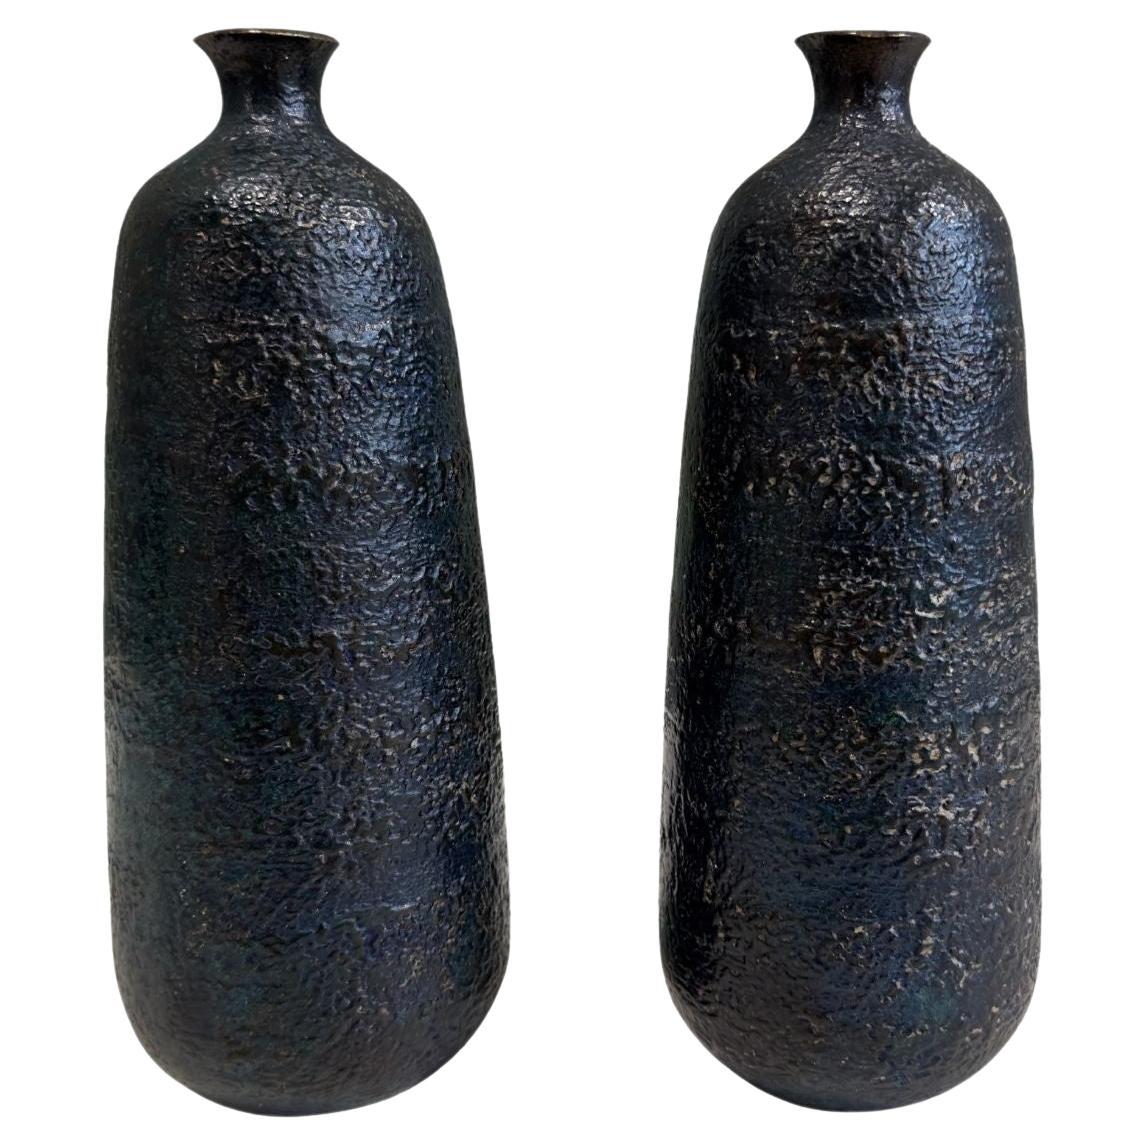 Japanese Craftsman Bronze Vases Black Volcanic Patinated Enamel, Japan 1930's For Sale